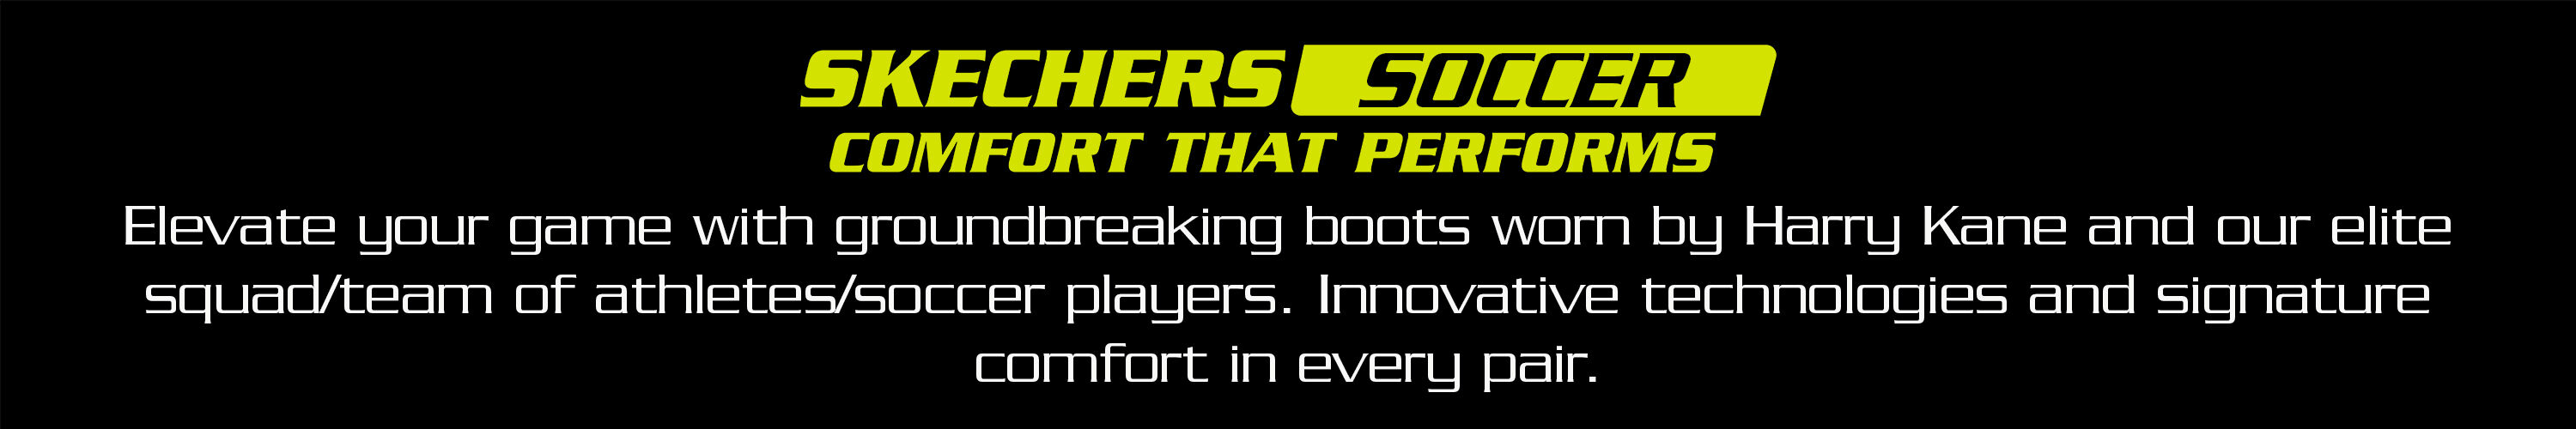 Skechers Football Evolution Pack